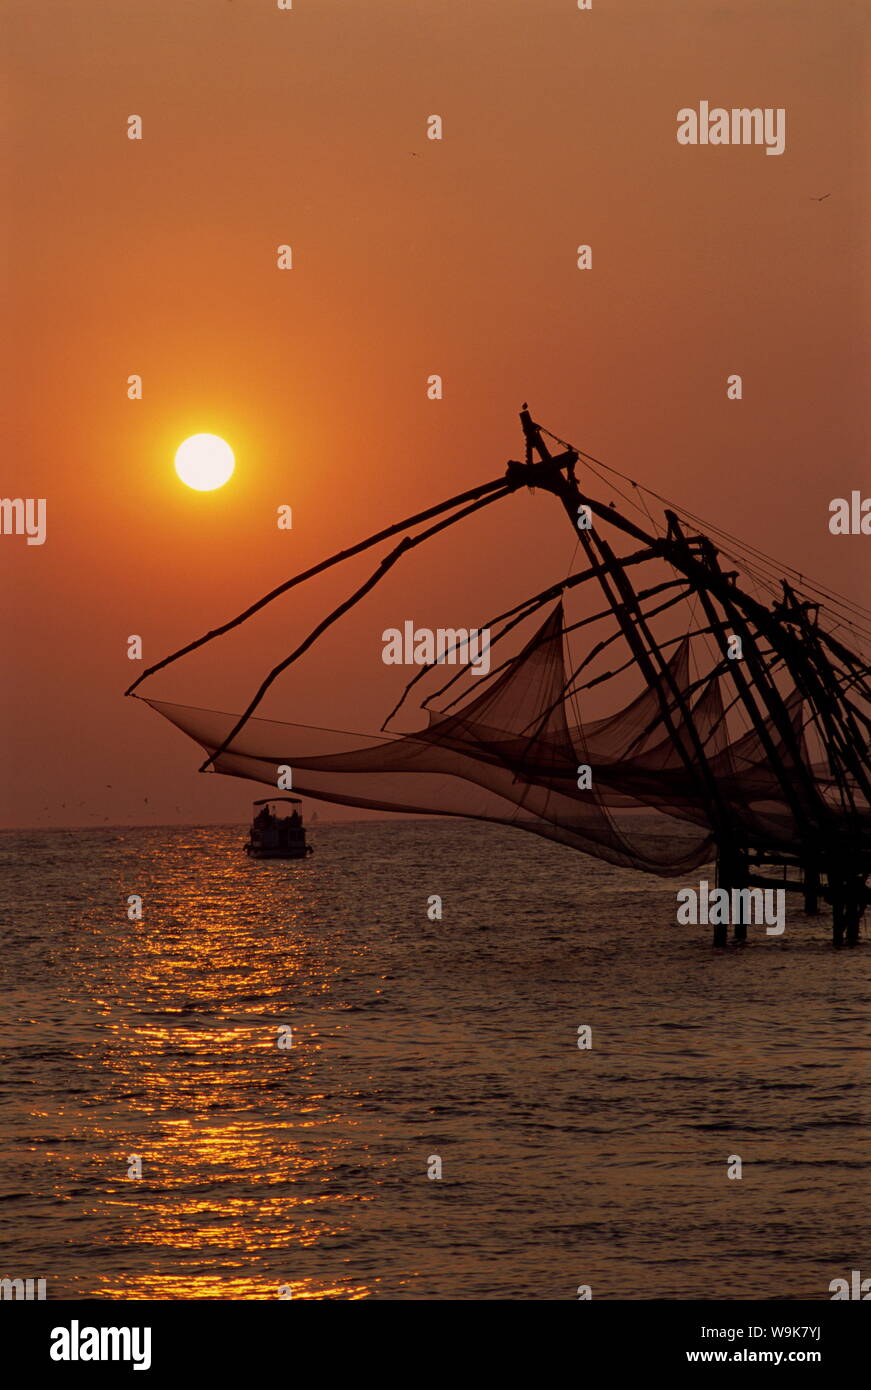 Fishing nets at sunset, Cochin, Kerala state, India, Asia Stock Photo